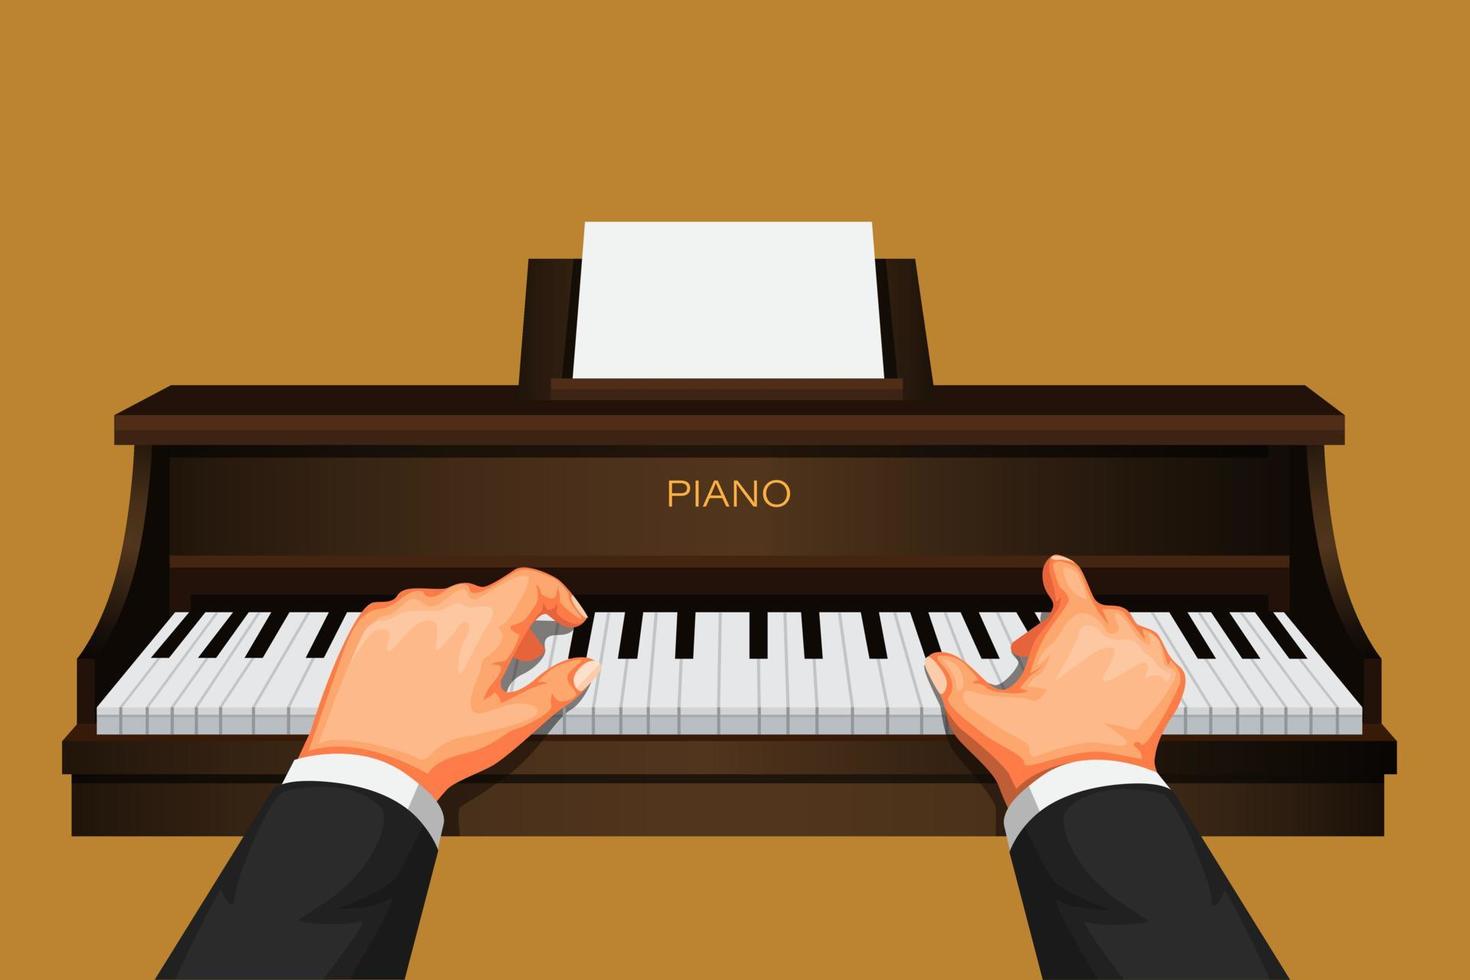 Mano tocando el piano, concepto de símbolo de práctica de músico pianista en vector de ilustración de dibujos animados